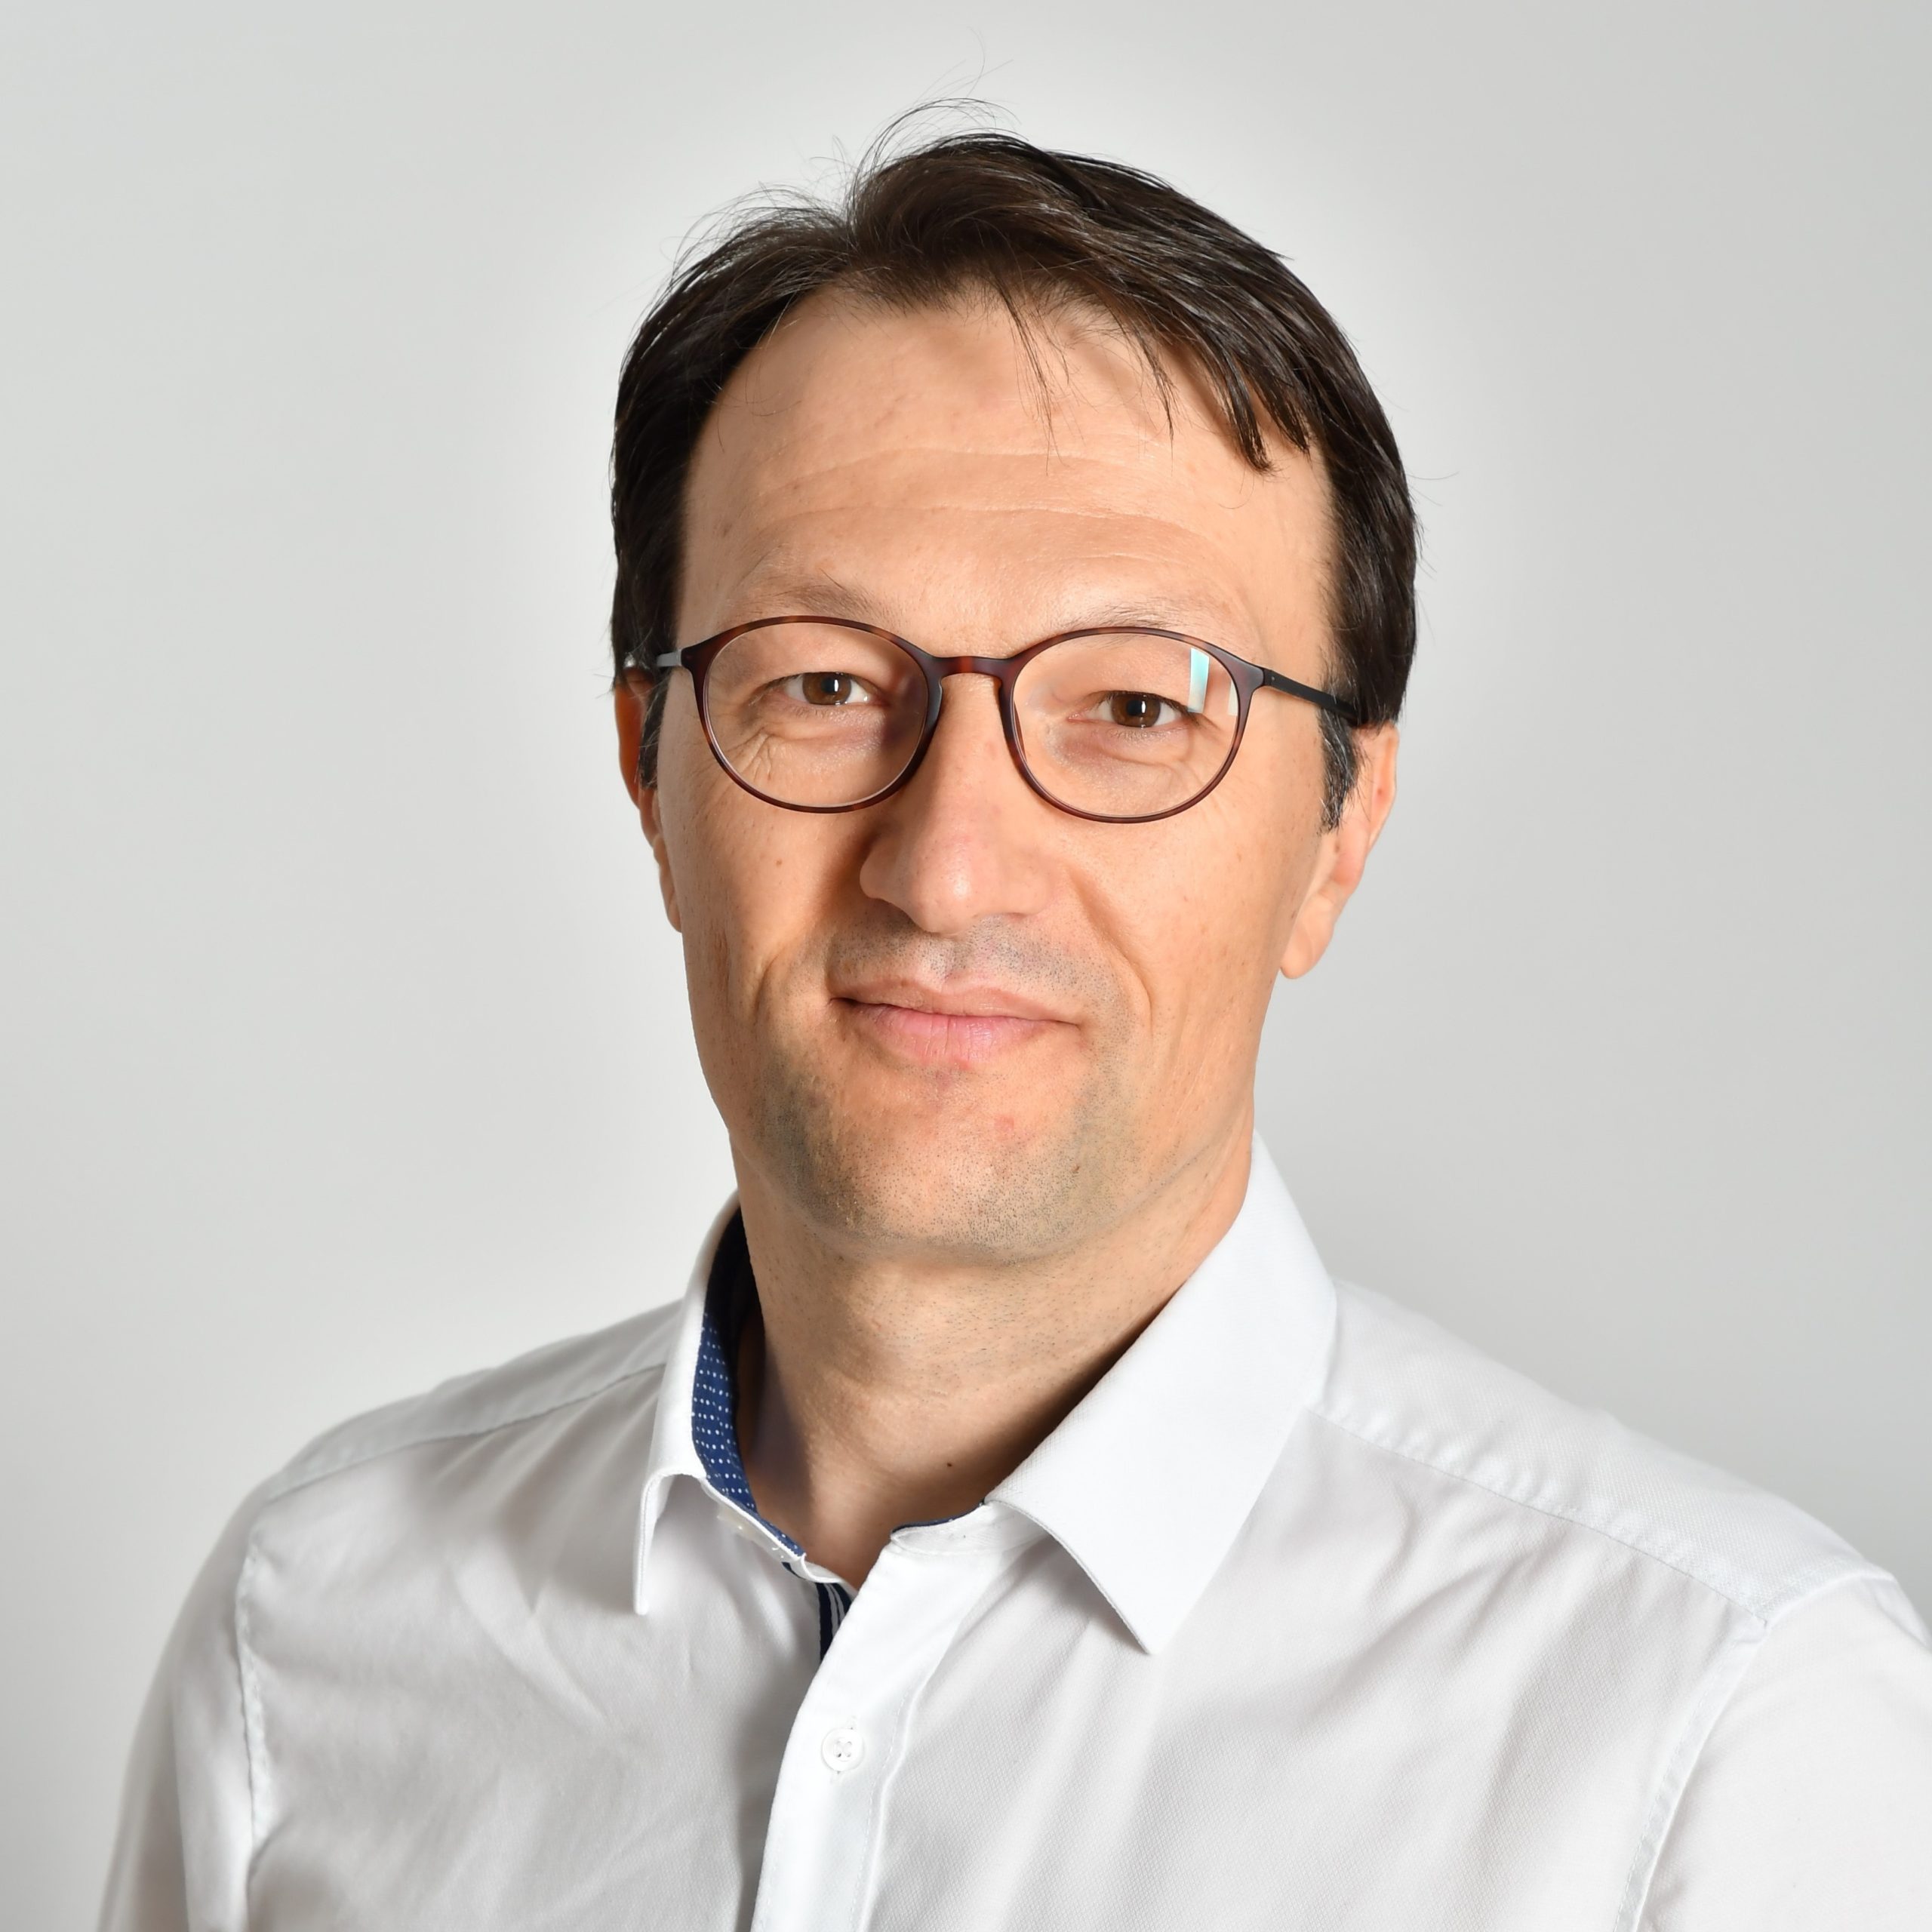 Professor Markus Metzler